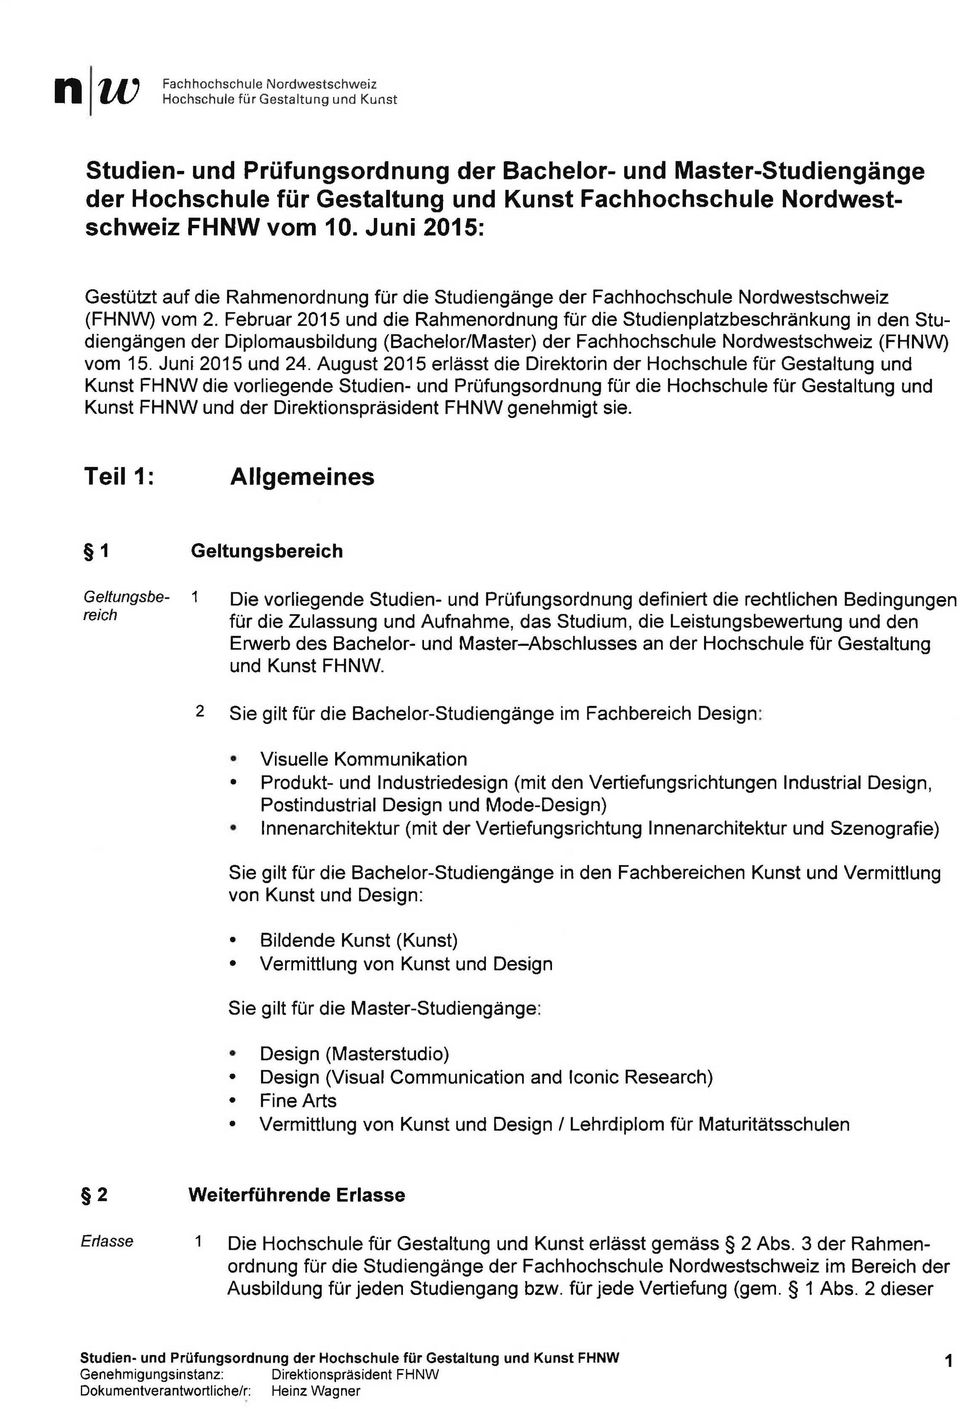 Februar 015 und die Rahmenordnung für die Studienplatzbeschränkung in den Studiengängen der Diplomausbildung (Bachelor/Master) der Fachhochschule Nordwestschweiz (FHNW) vom 15. Juni 015 und.